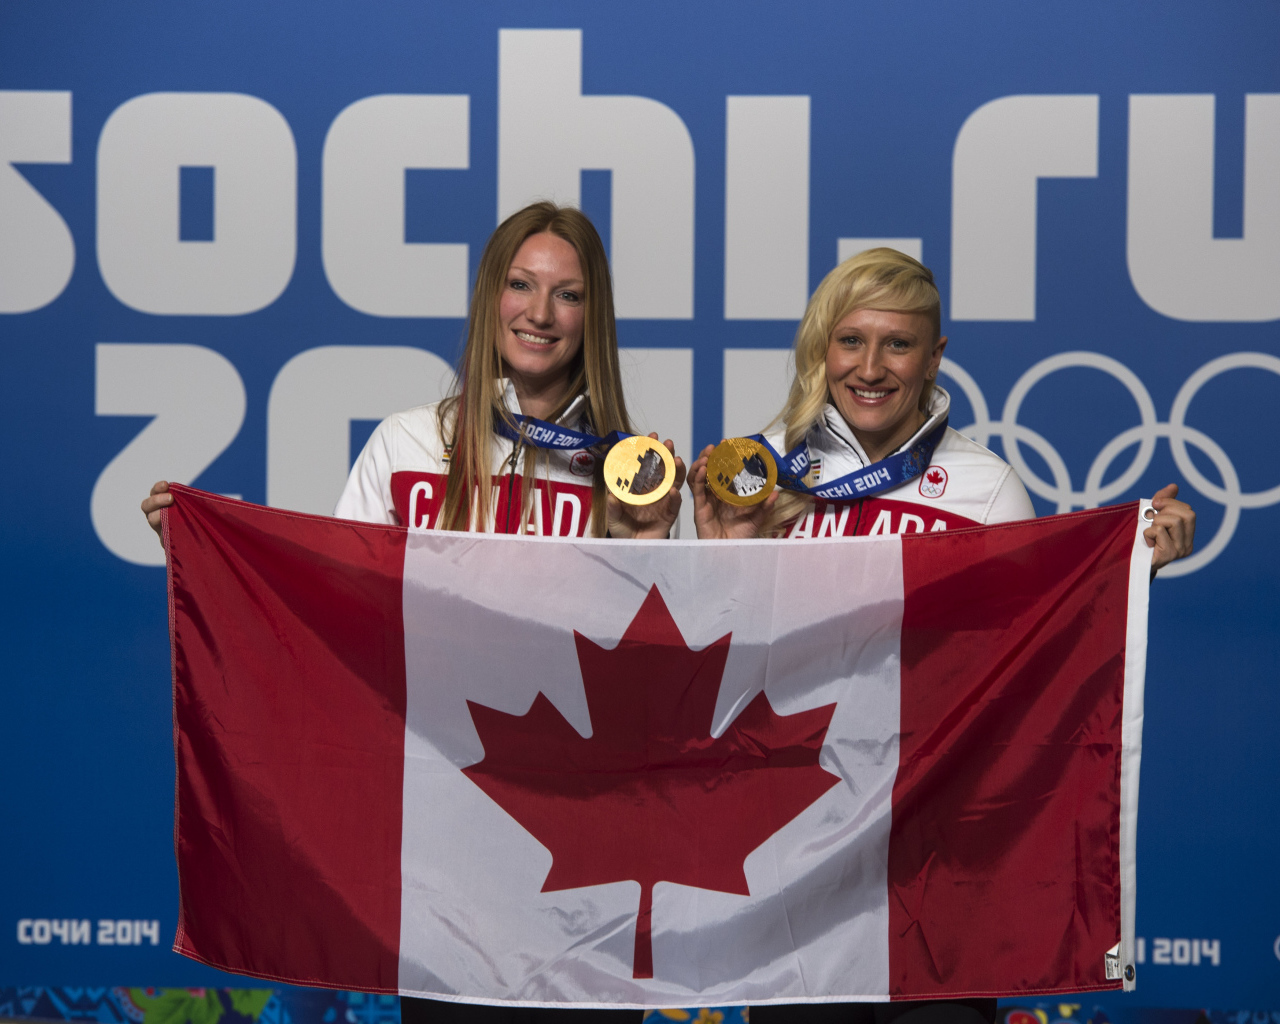 Кейли Хамфрис канадская бобслеистка обладательница золотой медали в Сочи